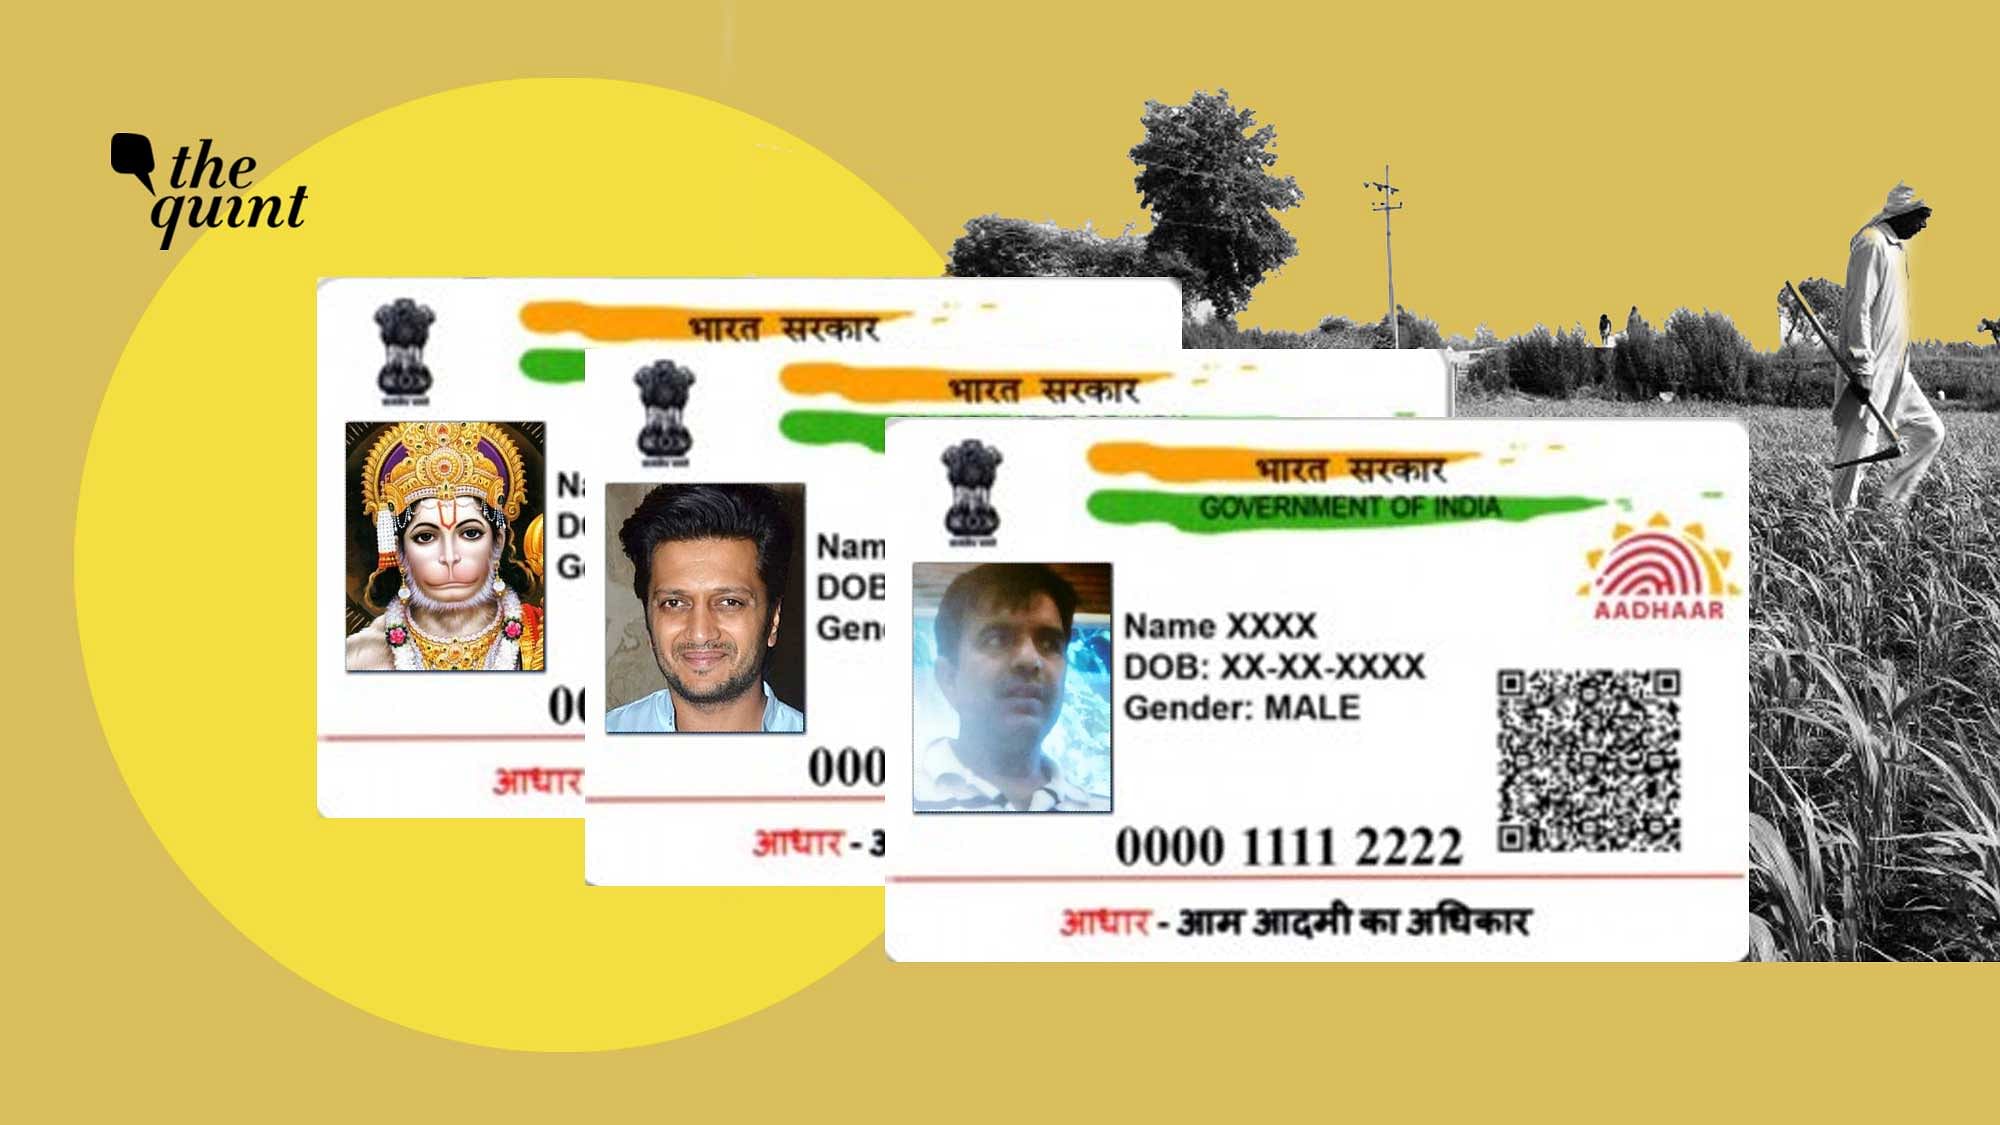 Riteish Deshmukh, Hanuman and Pak spy Mehboob Rajpoot’s Aadhaar numbers were used to register for PM KISAN scheme.